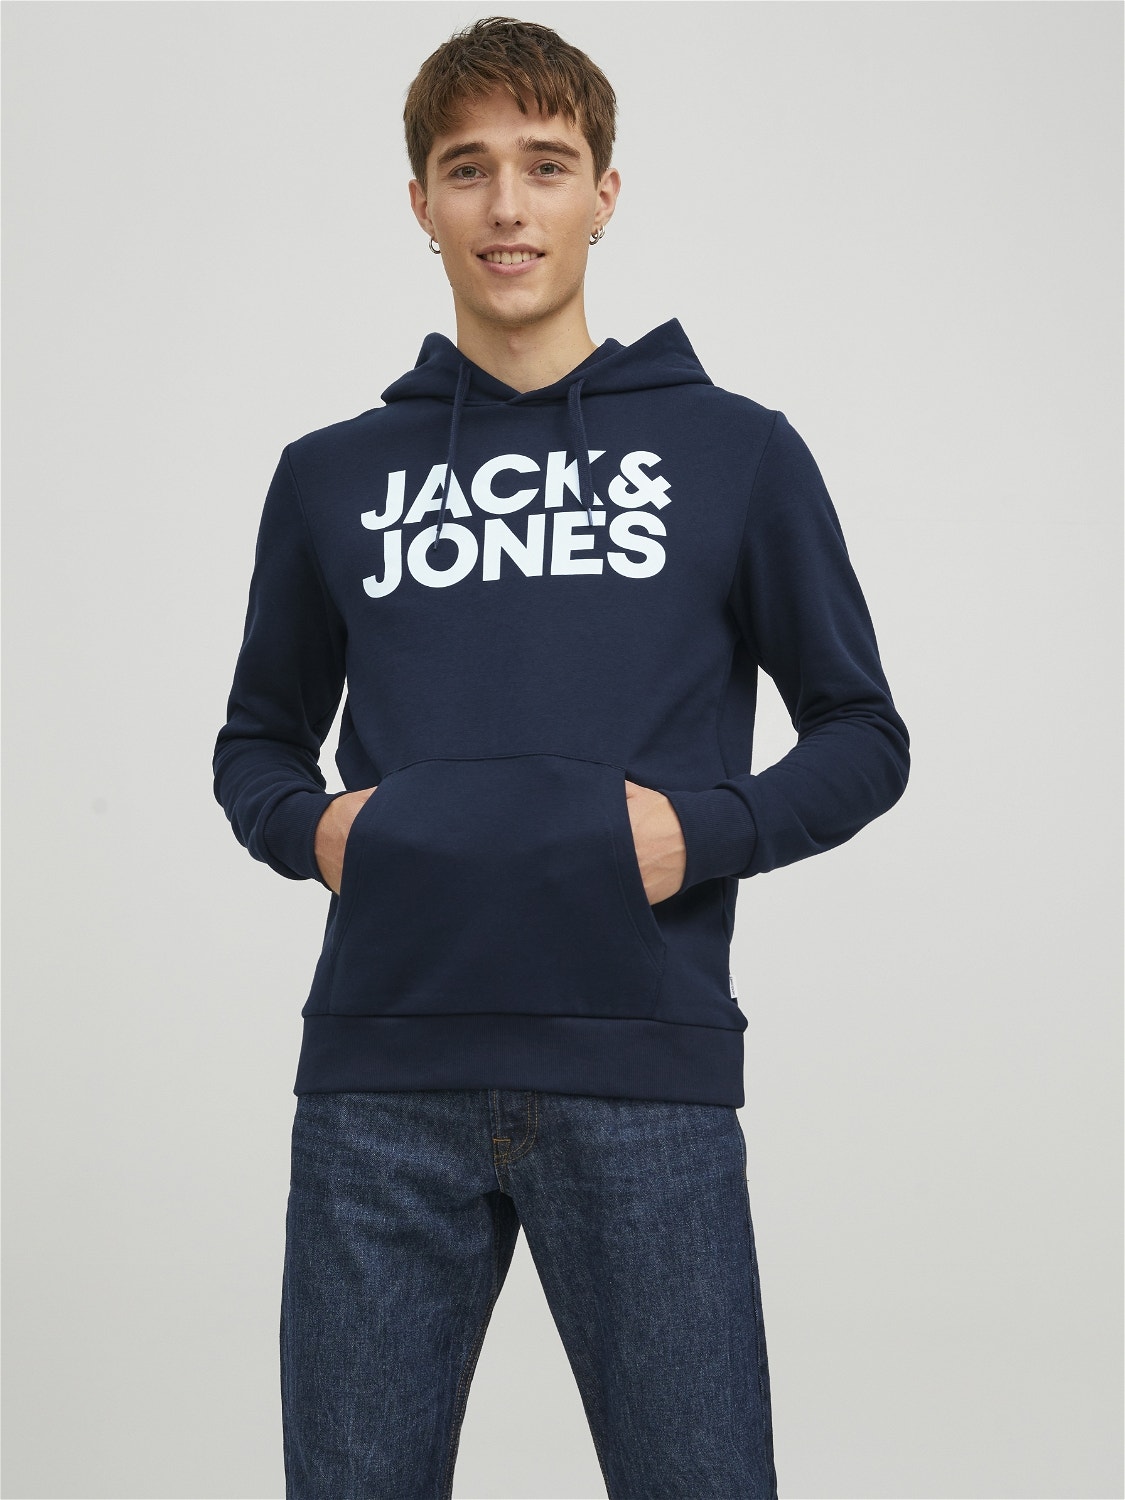 Jack & Jones Logo Mikina s kapucí -Navy Blazer - 12152840